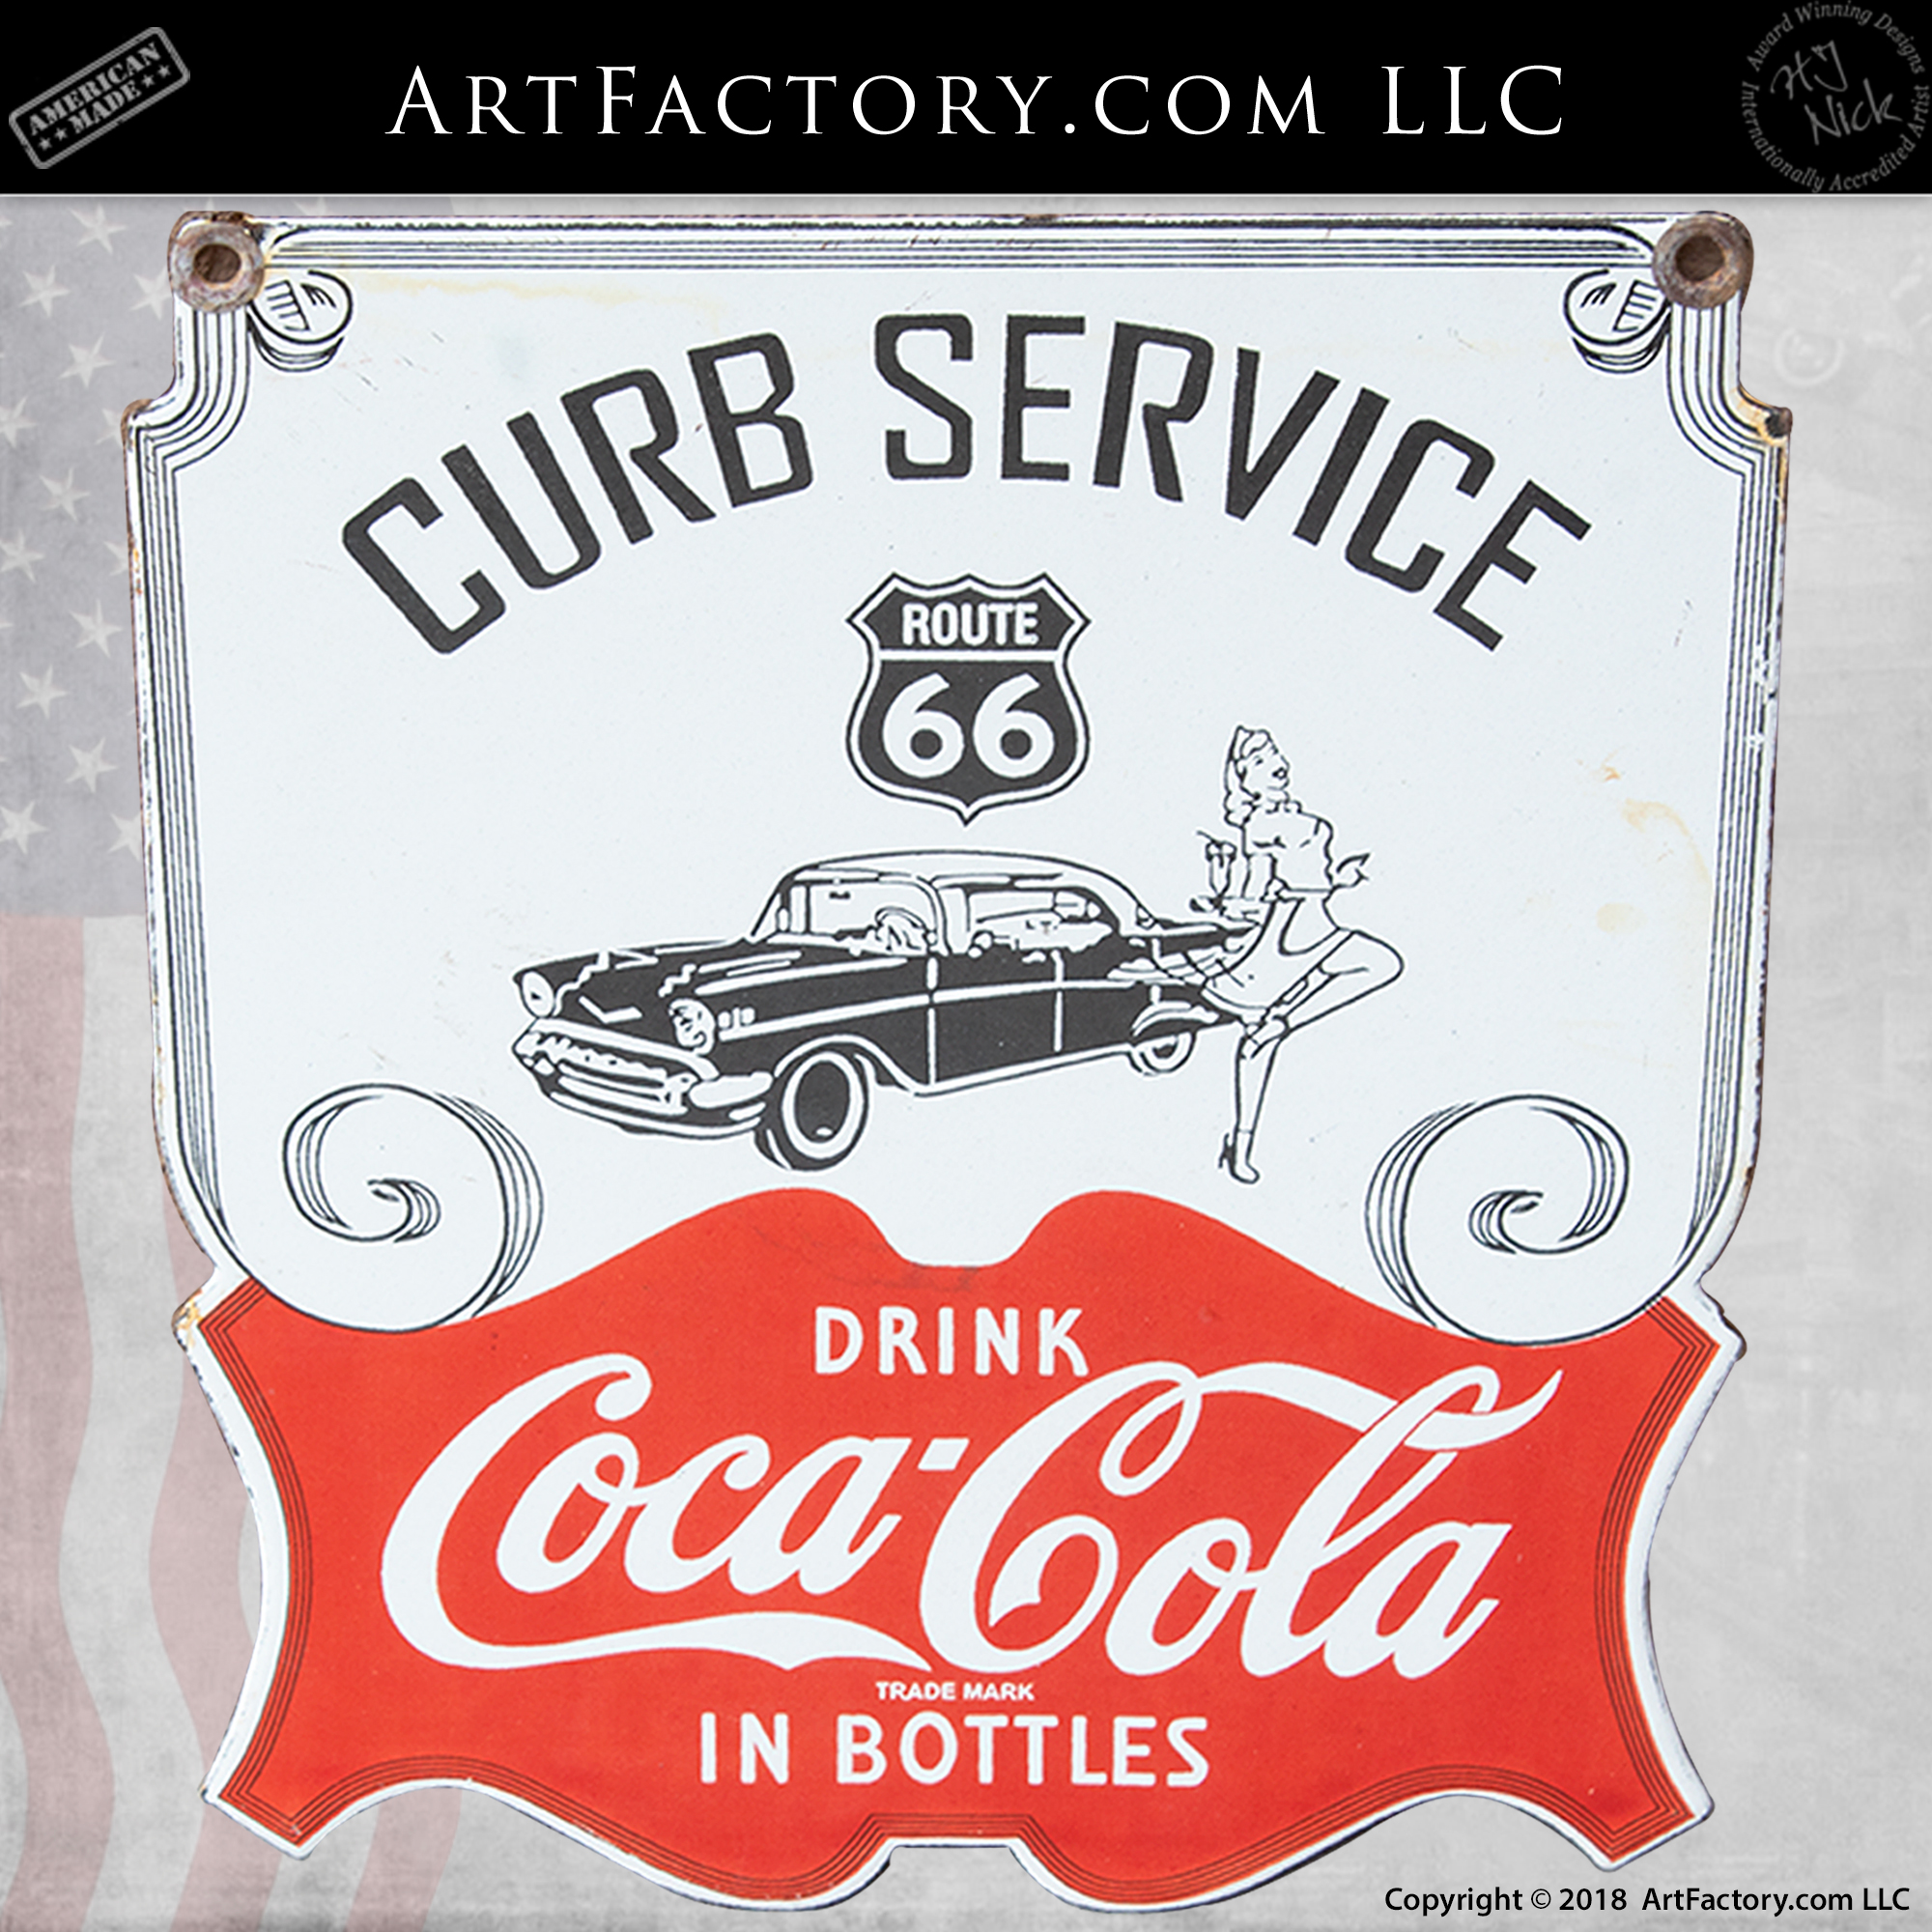 Curb Service Route 66 Coca Cola